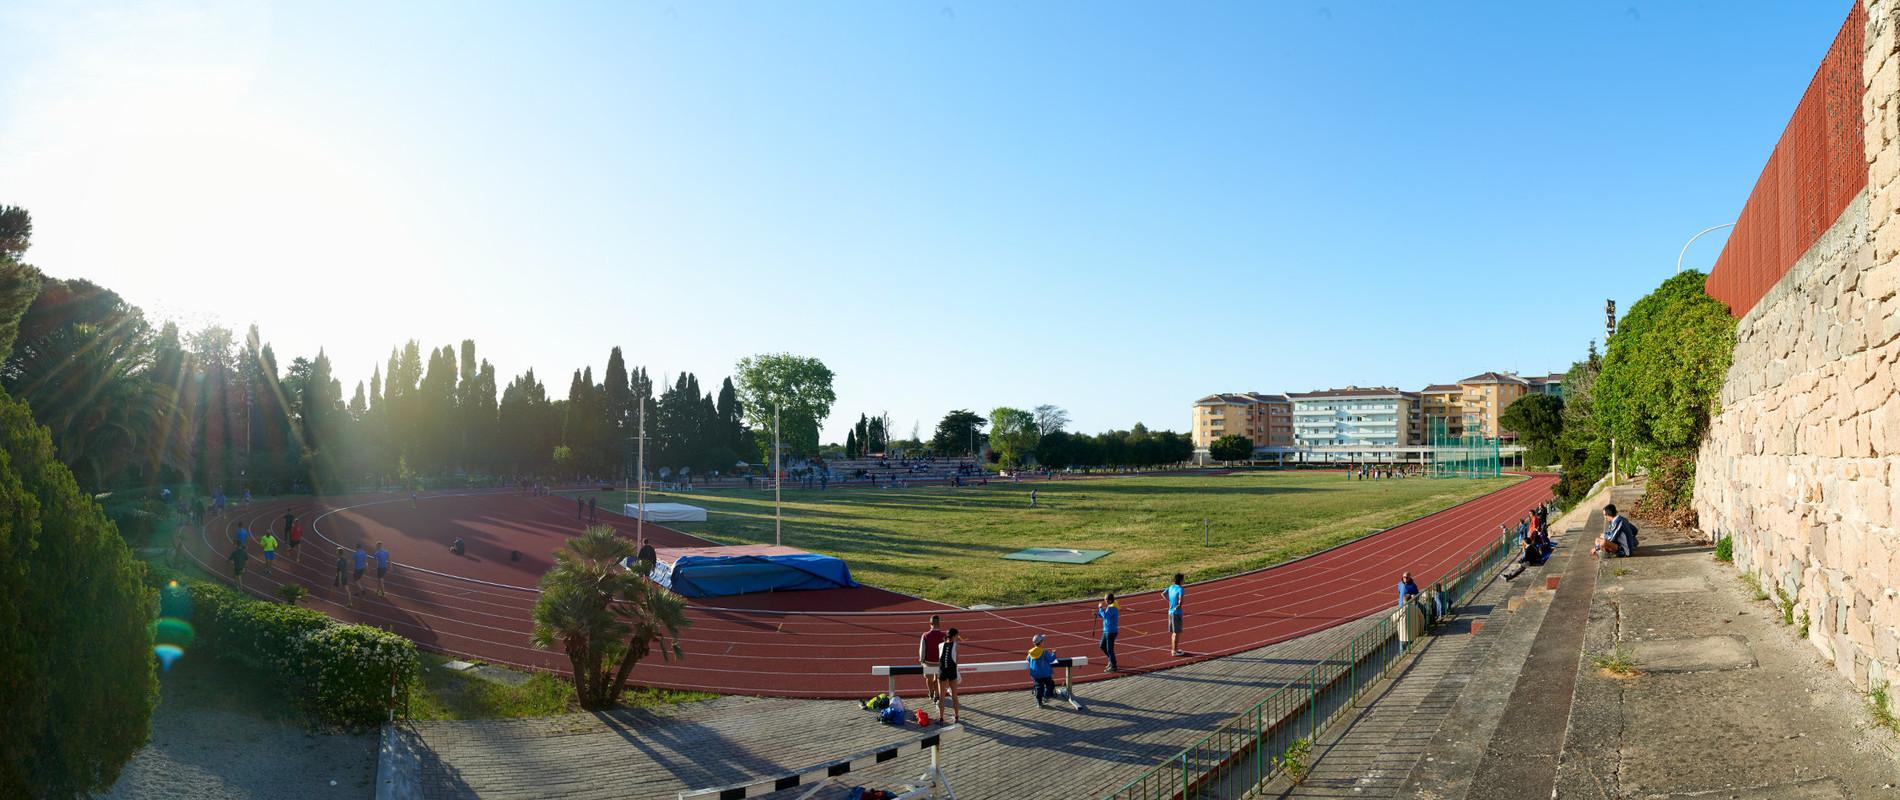 Stadium Dei Pini